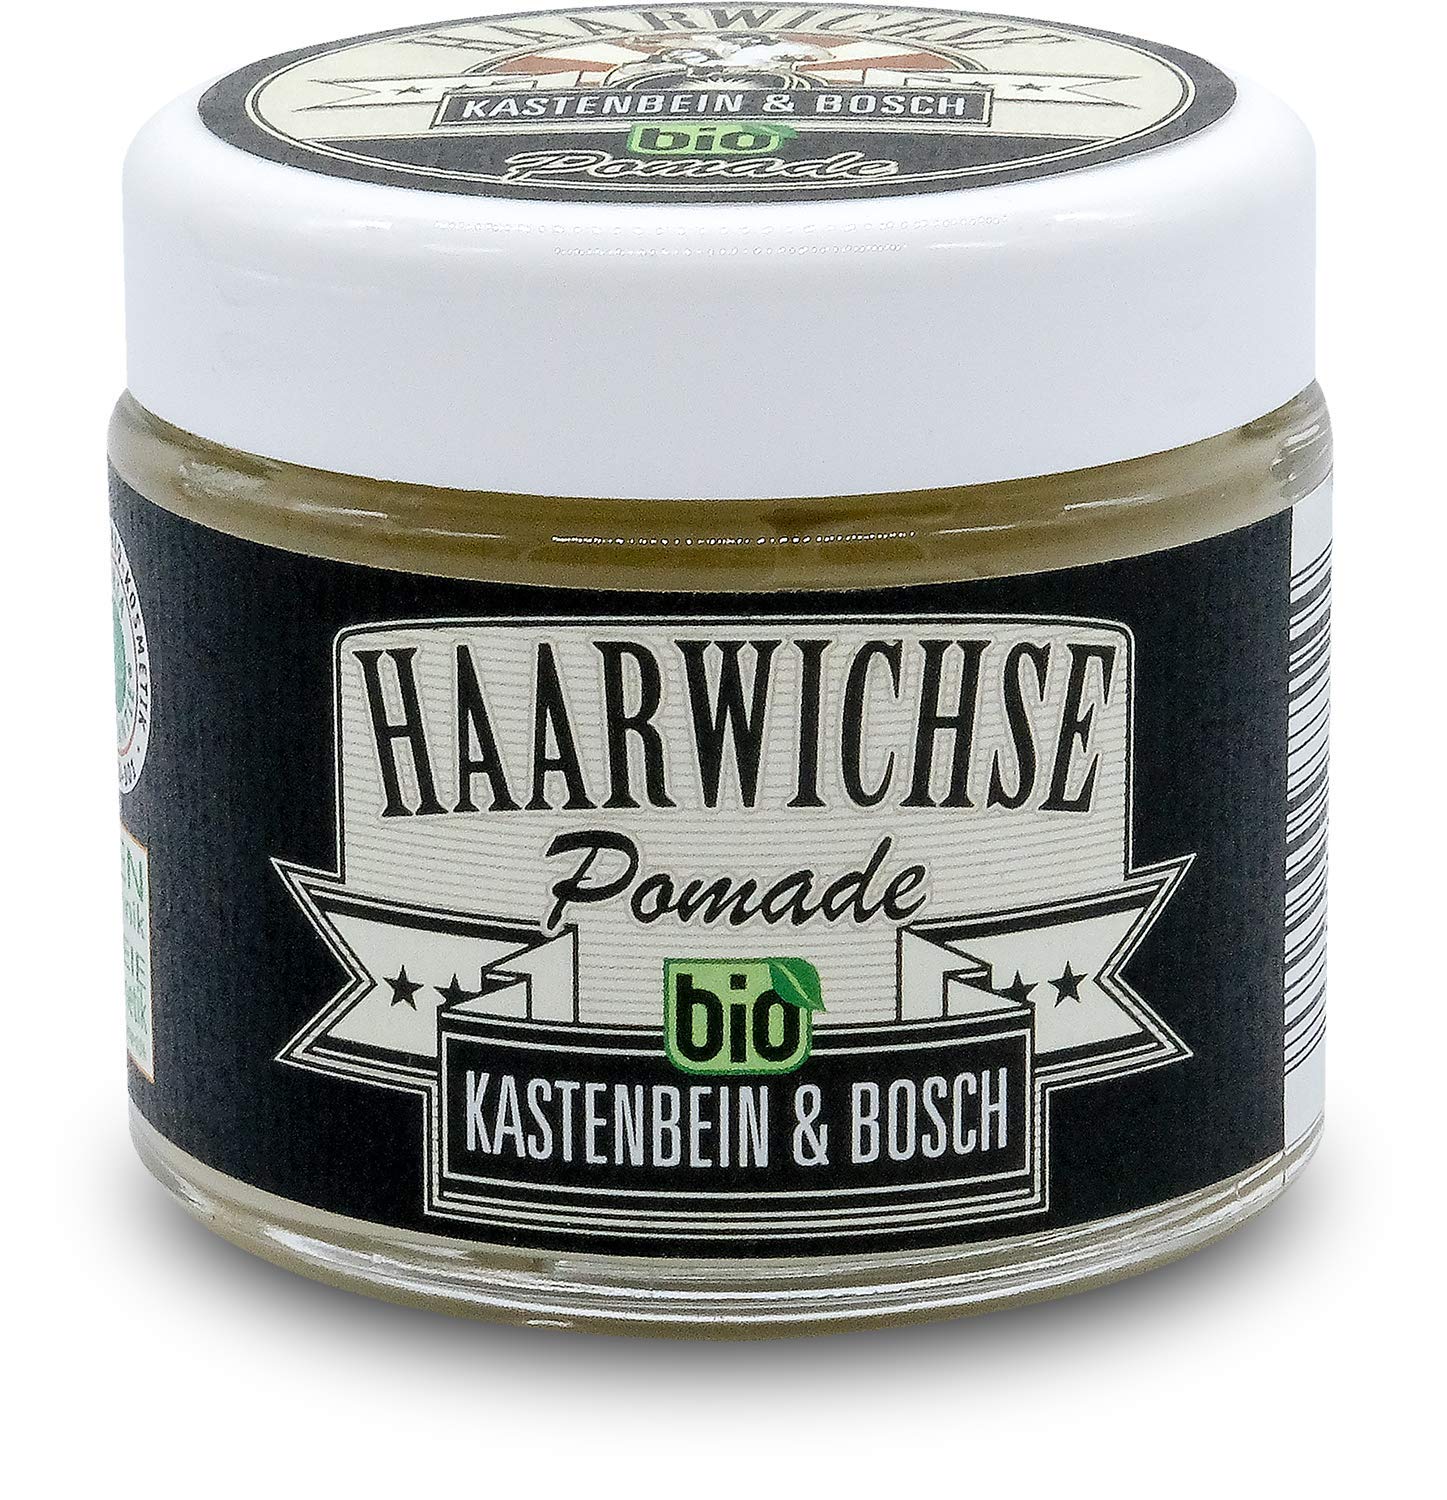 KASTENBEIN & BOSCH: Haarwichse "Pomade" - Bio- Haarstyling Creme für glänzende Auftritte (50ml)